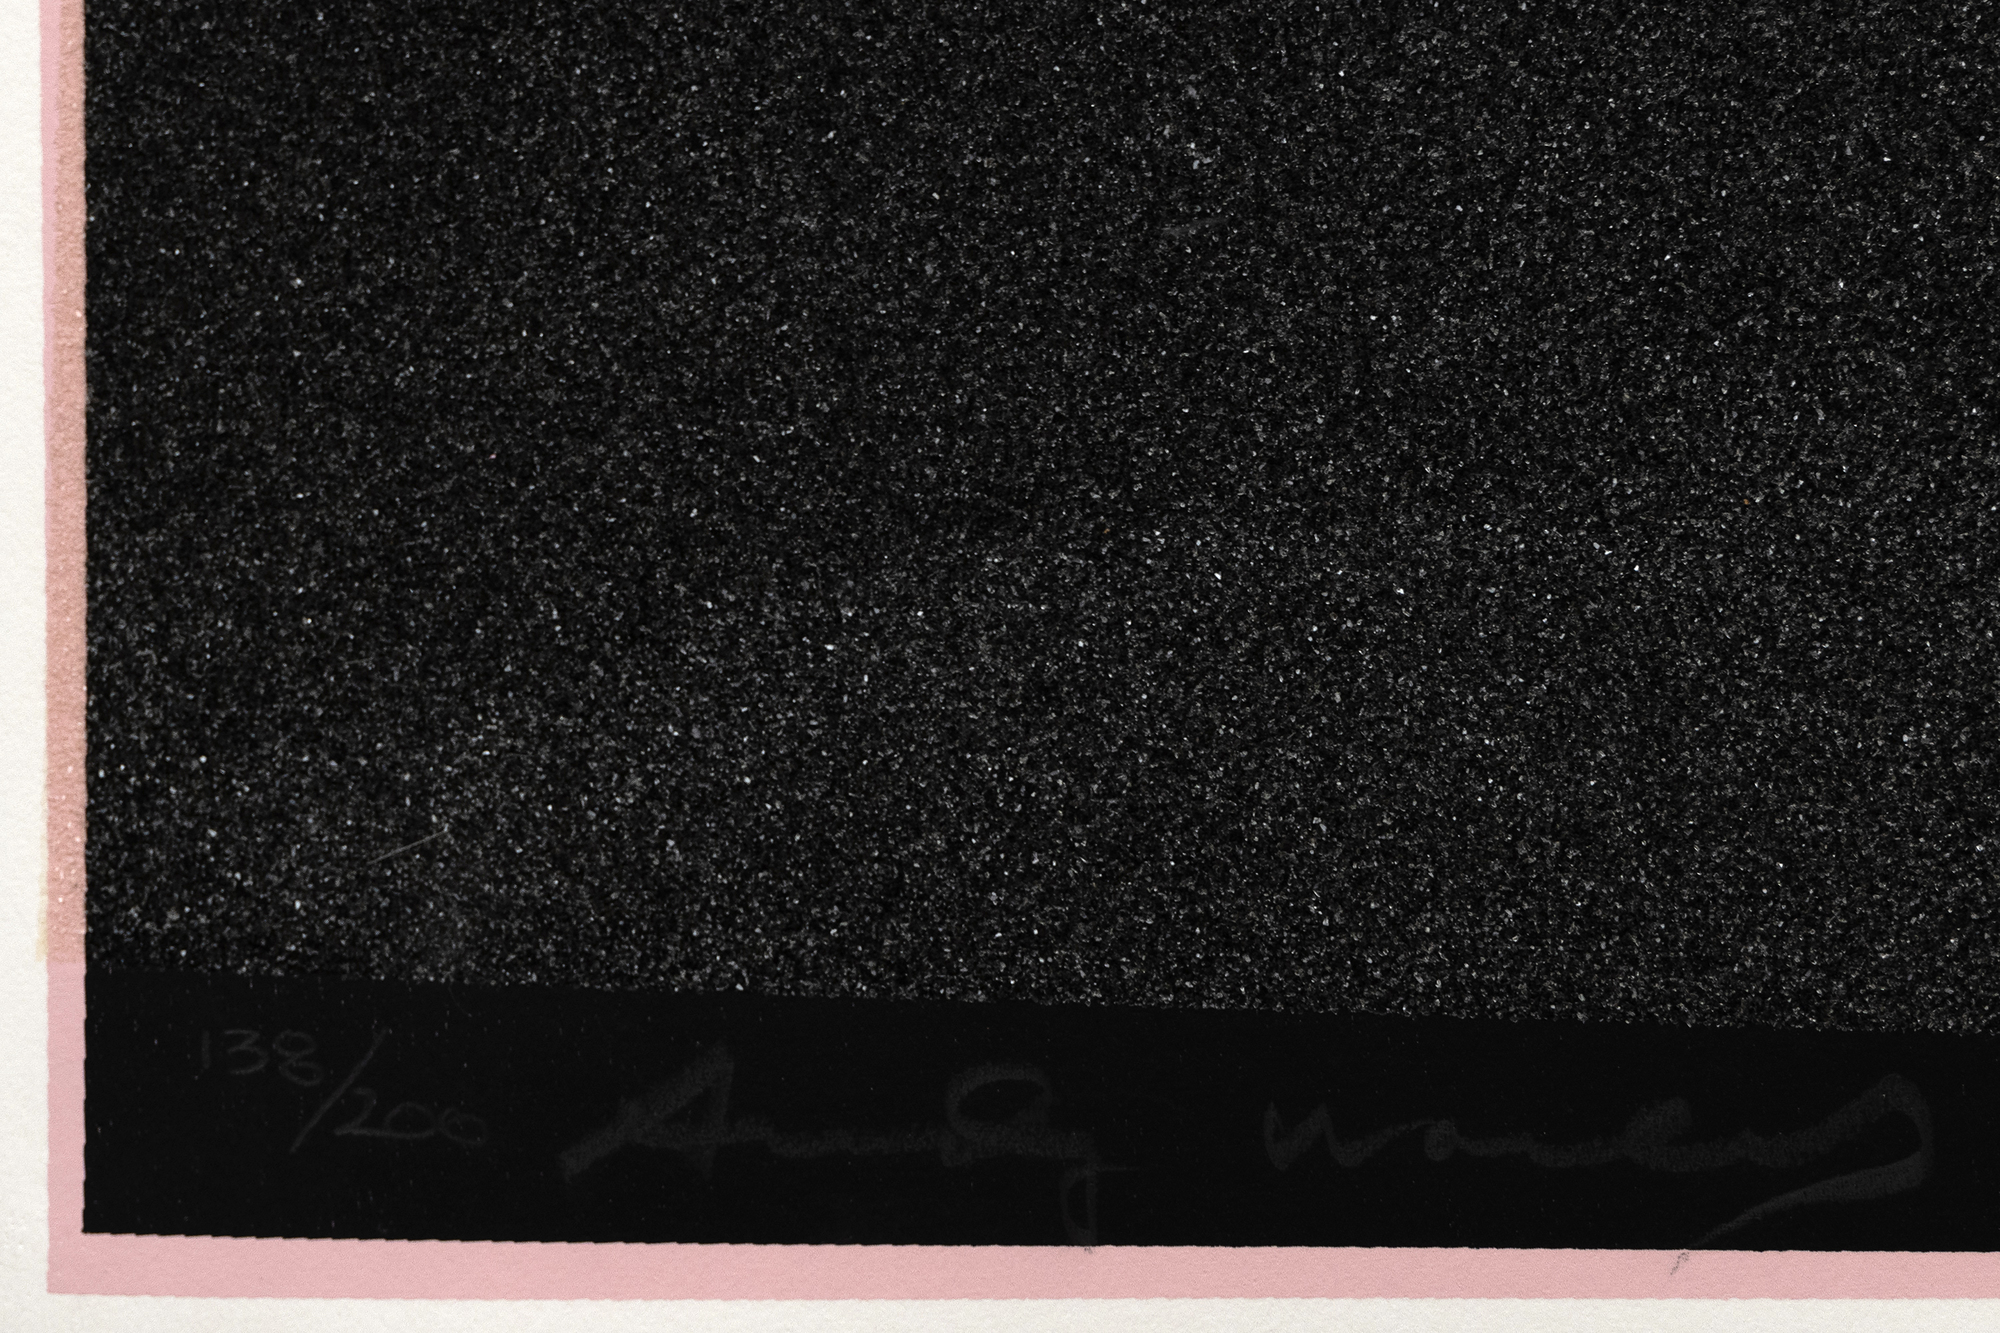 אנדי וורהול - מיקי (II.265) - הדפס רשת עם אבק יהלומים - 38 x 38 אינץ'